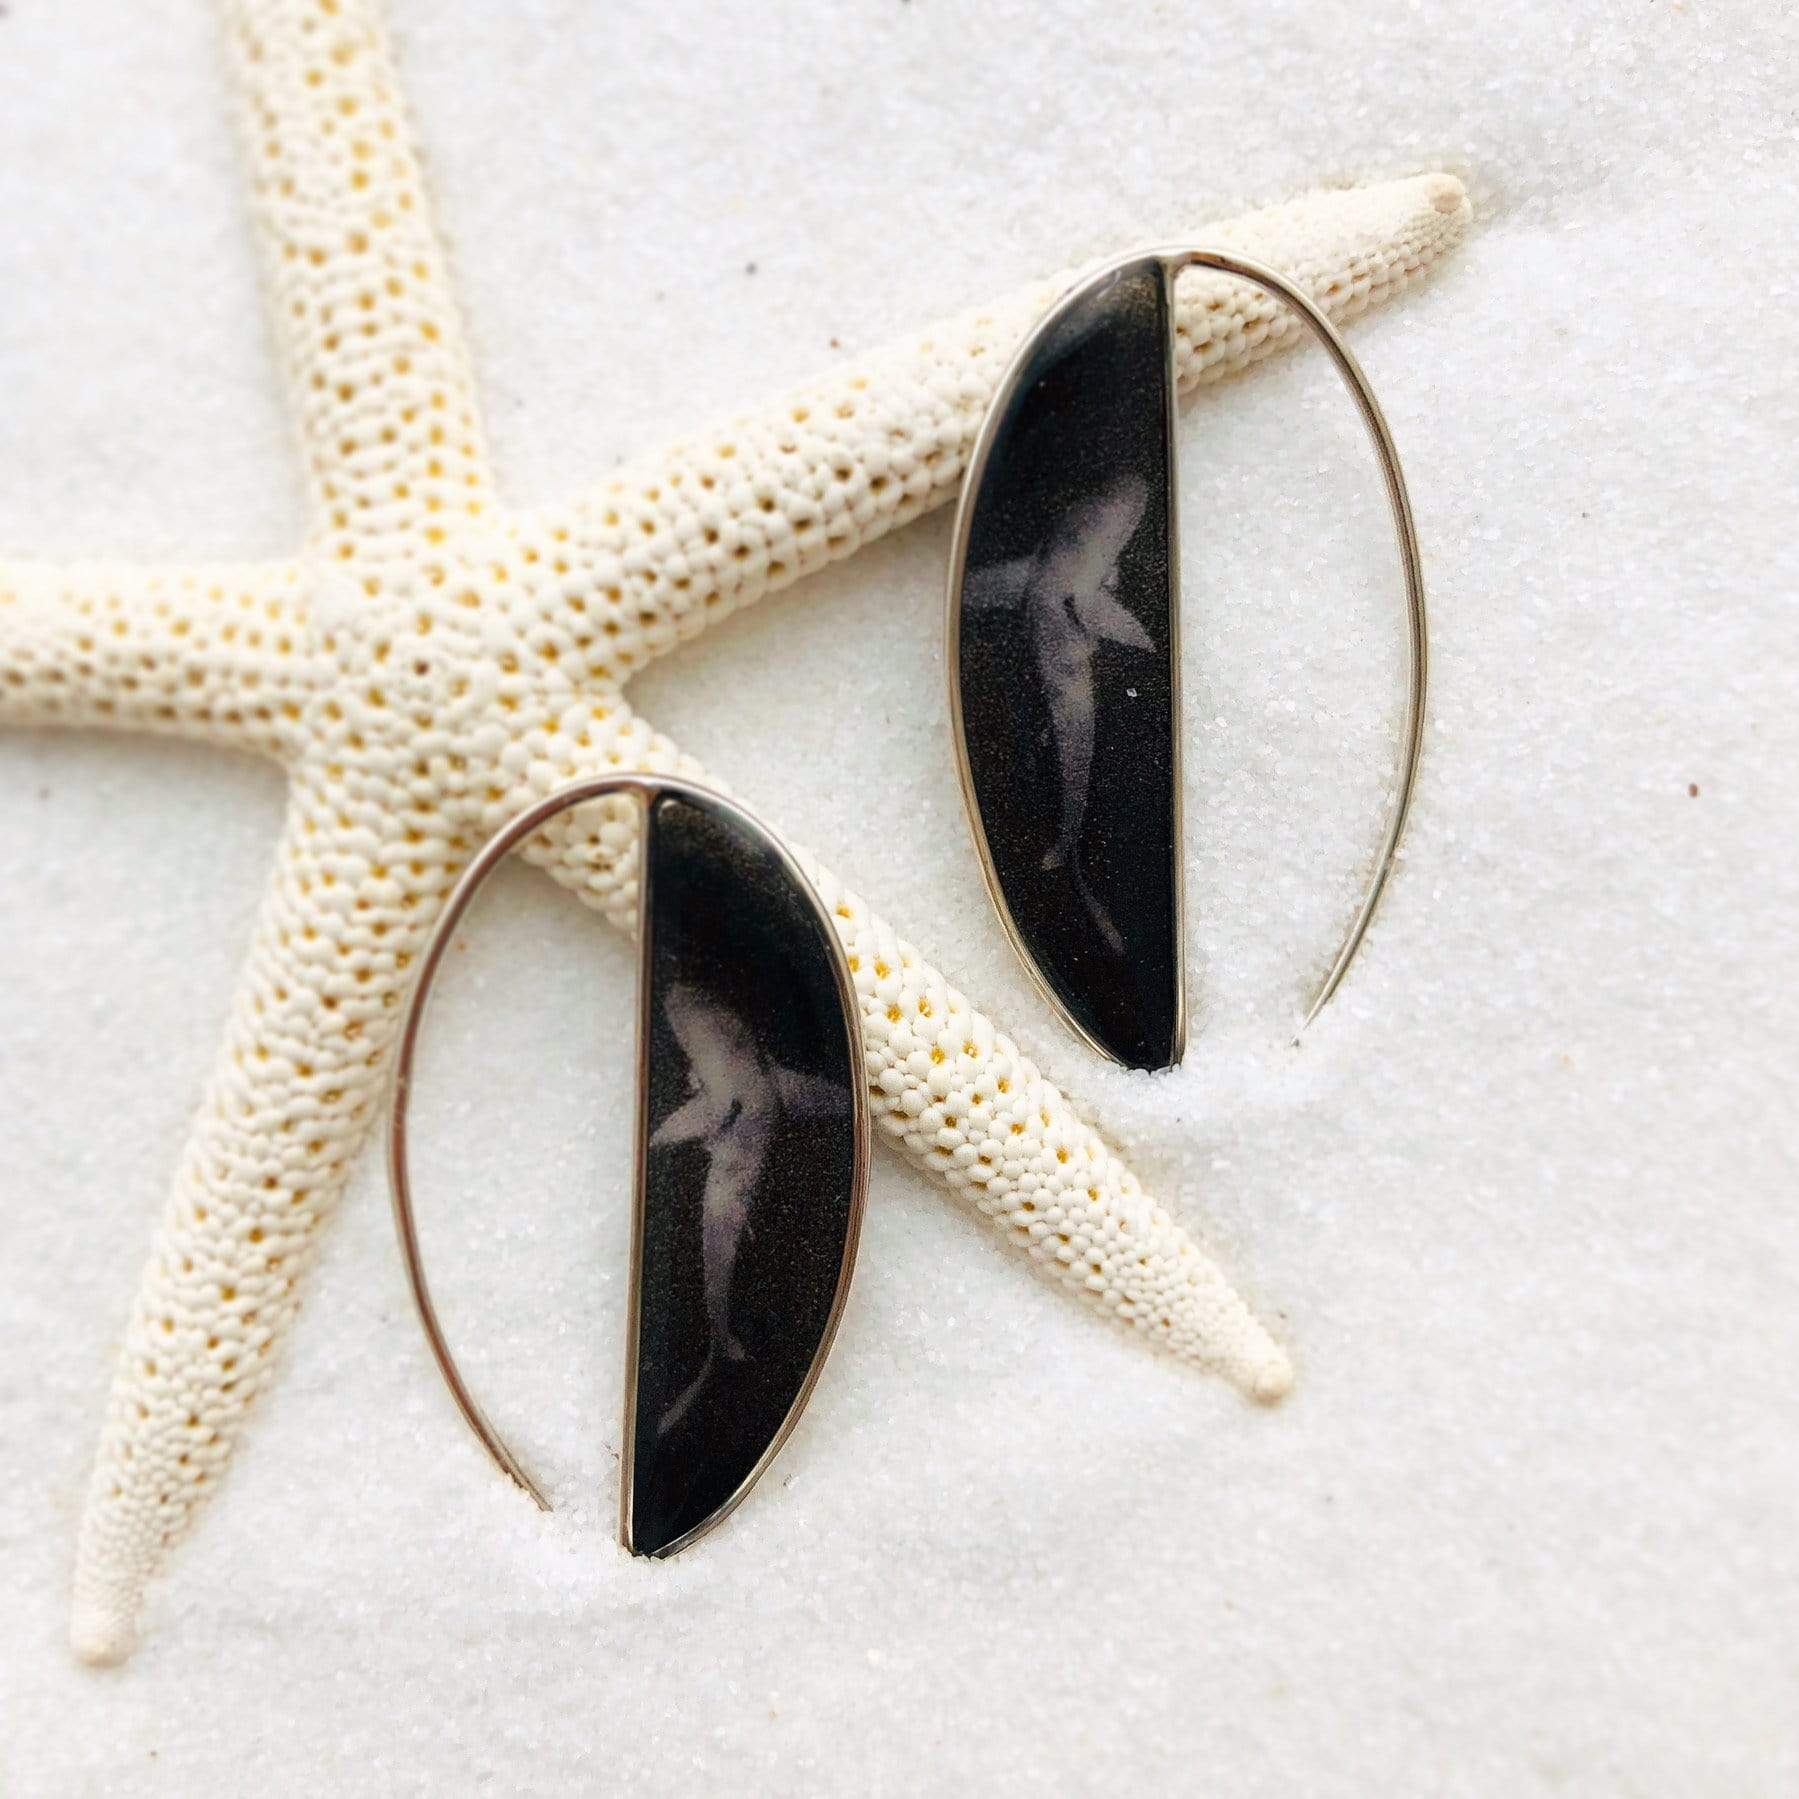 Shark Earrings by John Kowitz